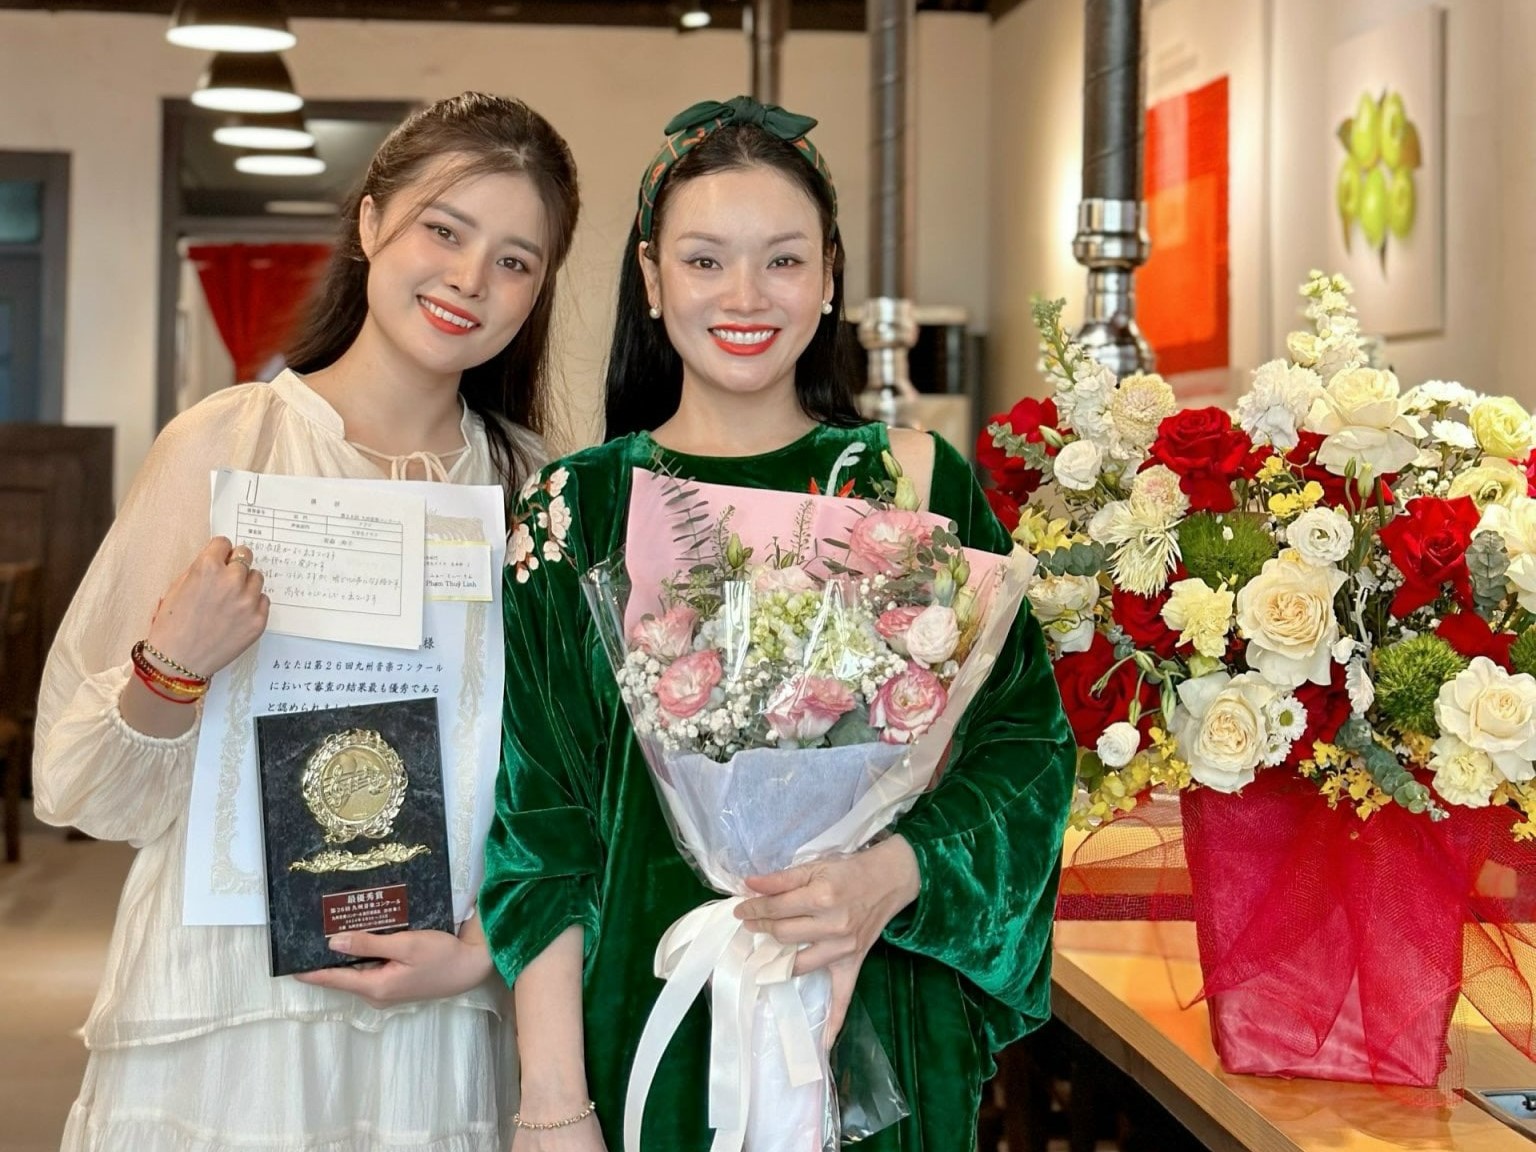 Cuộc thi âm nhạc quốc tế Kyushu Music Concour, Sinh viên Việt Nam giành giải xuất sắc